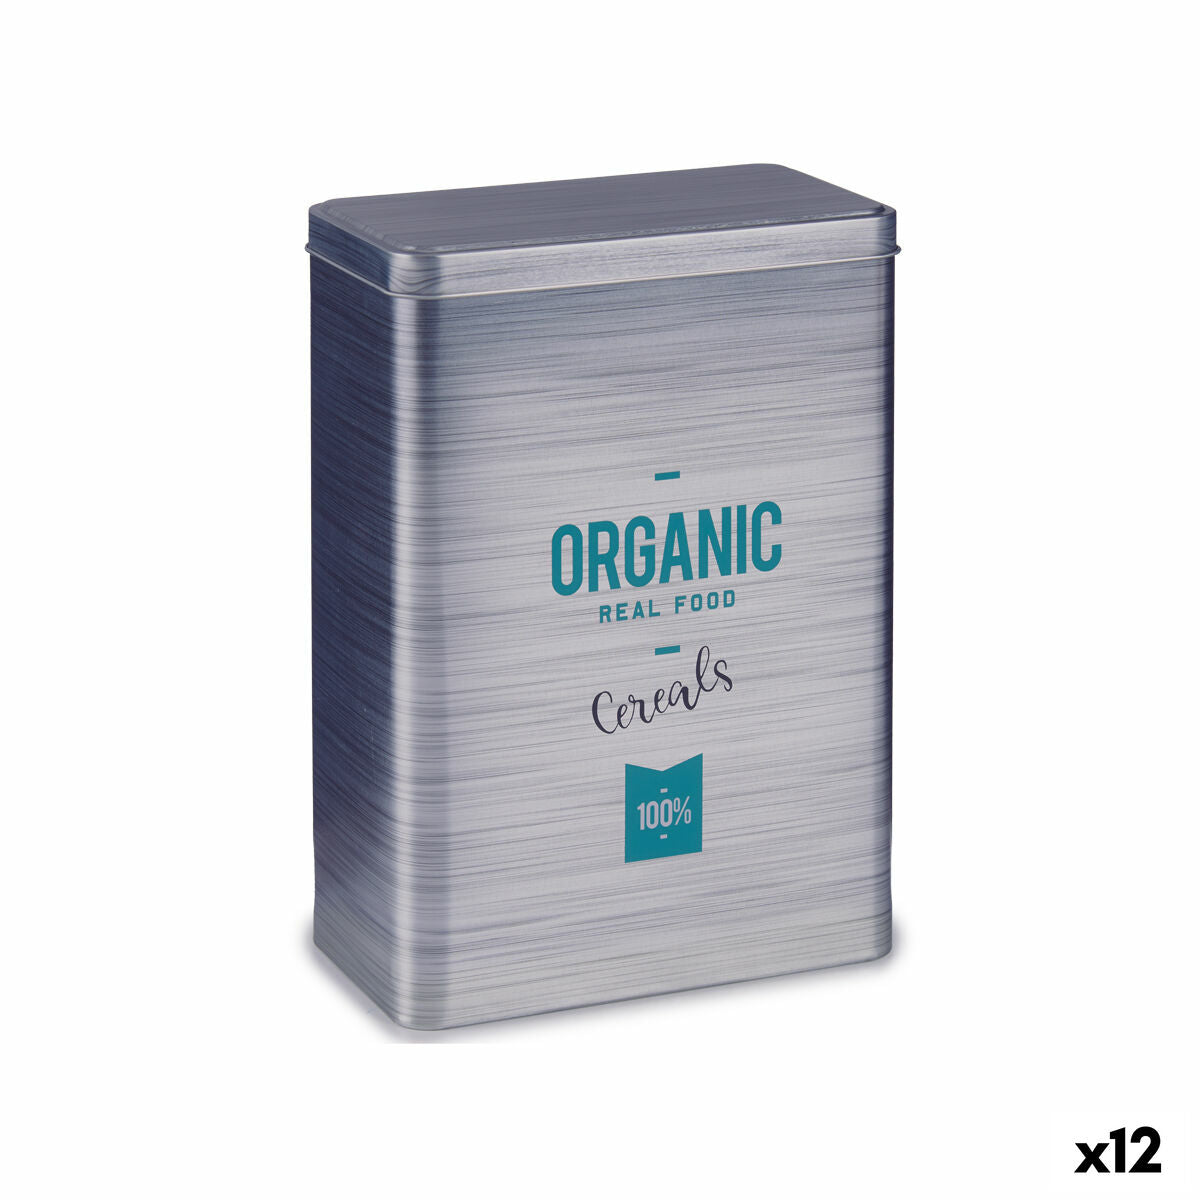 Distributeur de céréales Organic Gris Fer blanc 12 x 24,7 x 17,6 cm (12 Unités)